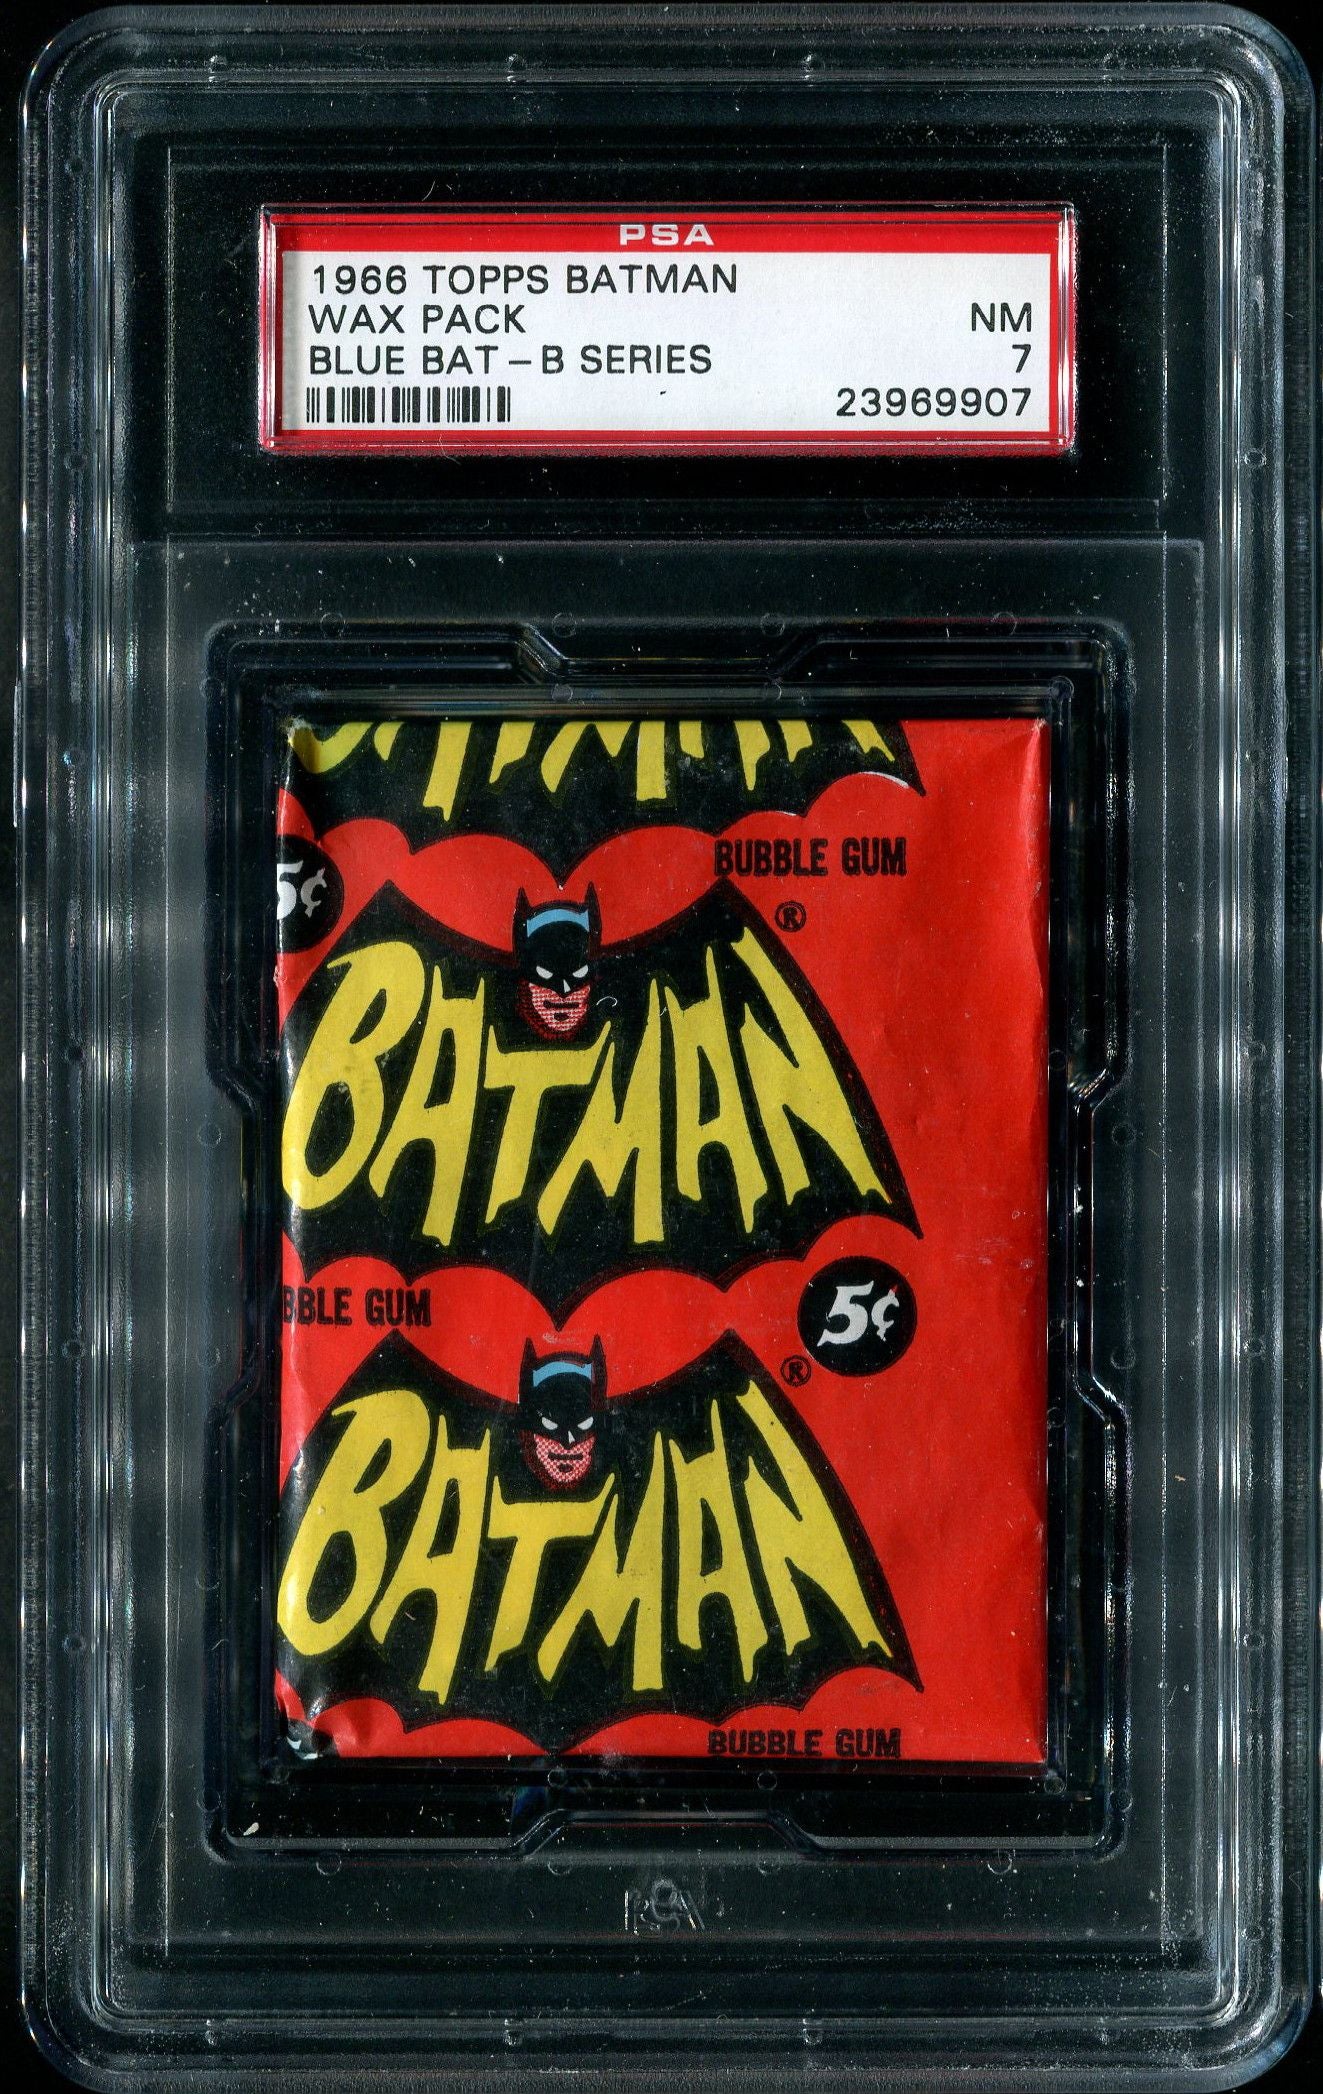 1966 Topps Batman Blue Bat B Series Unopened Wax Pack PSA 7